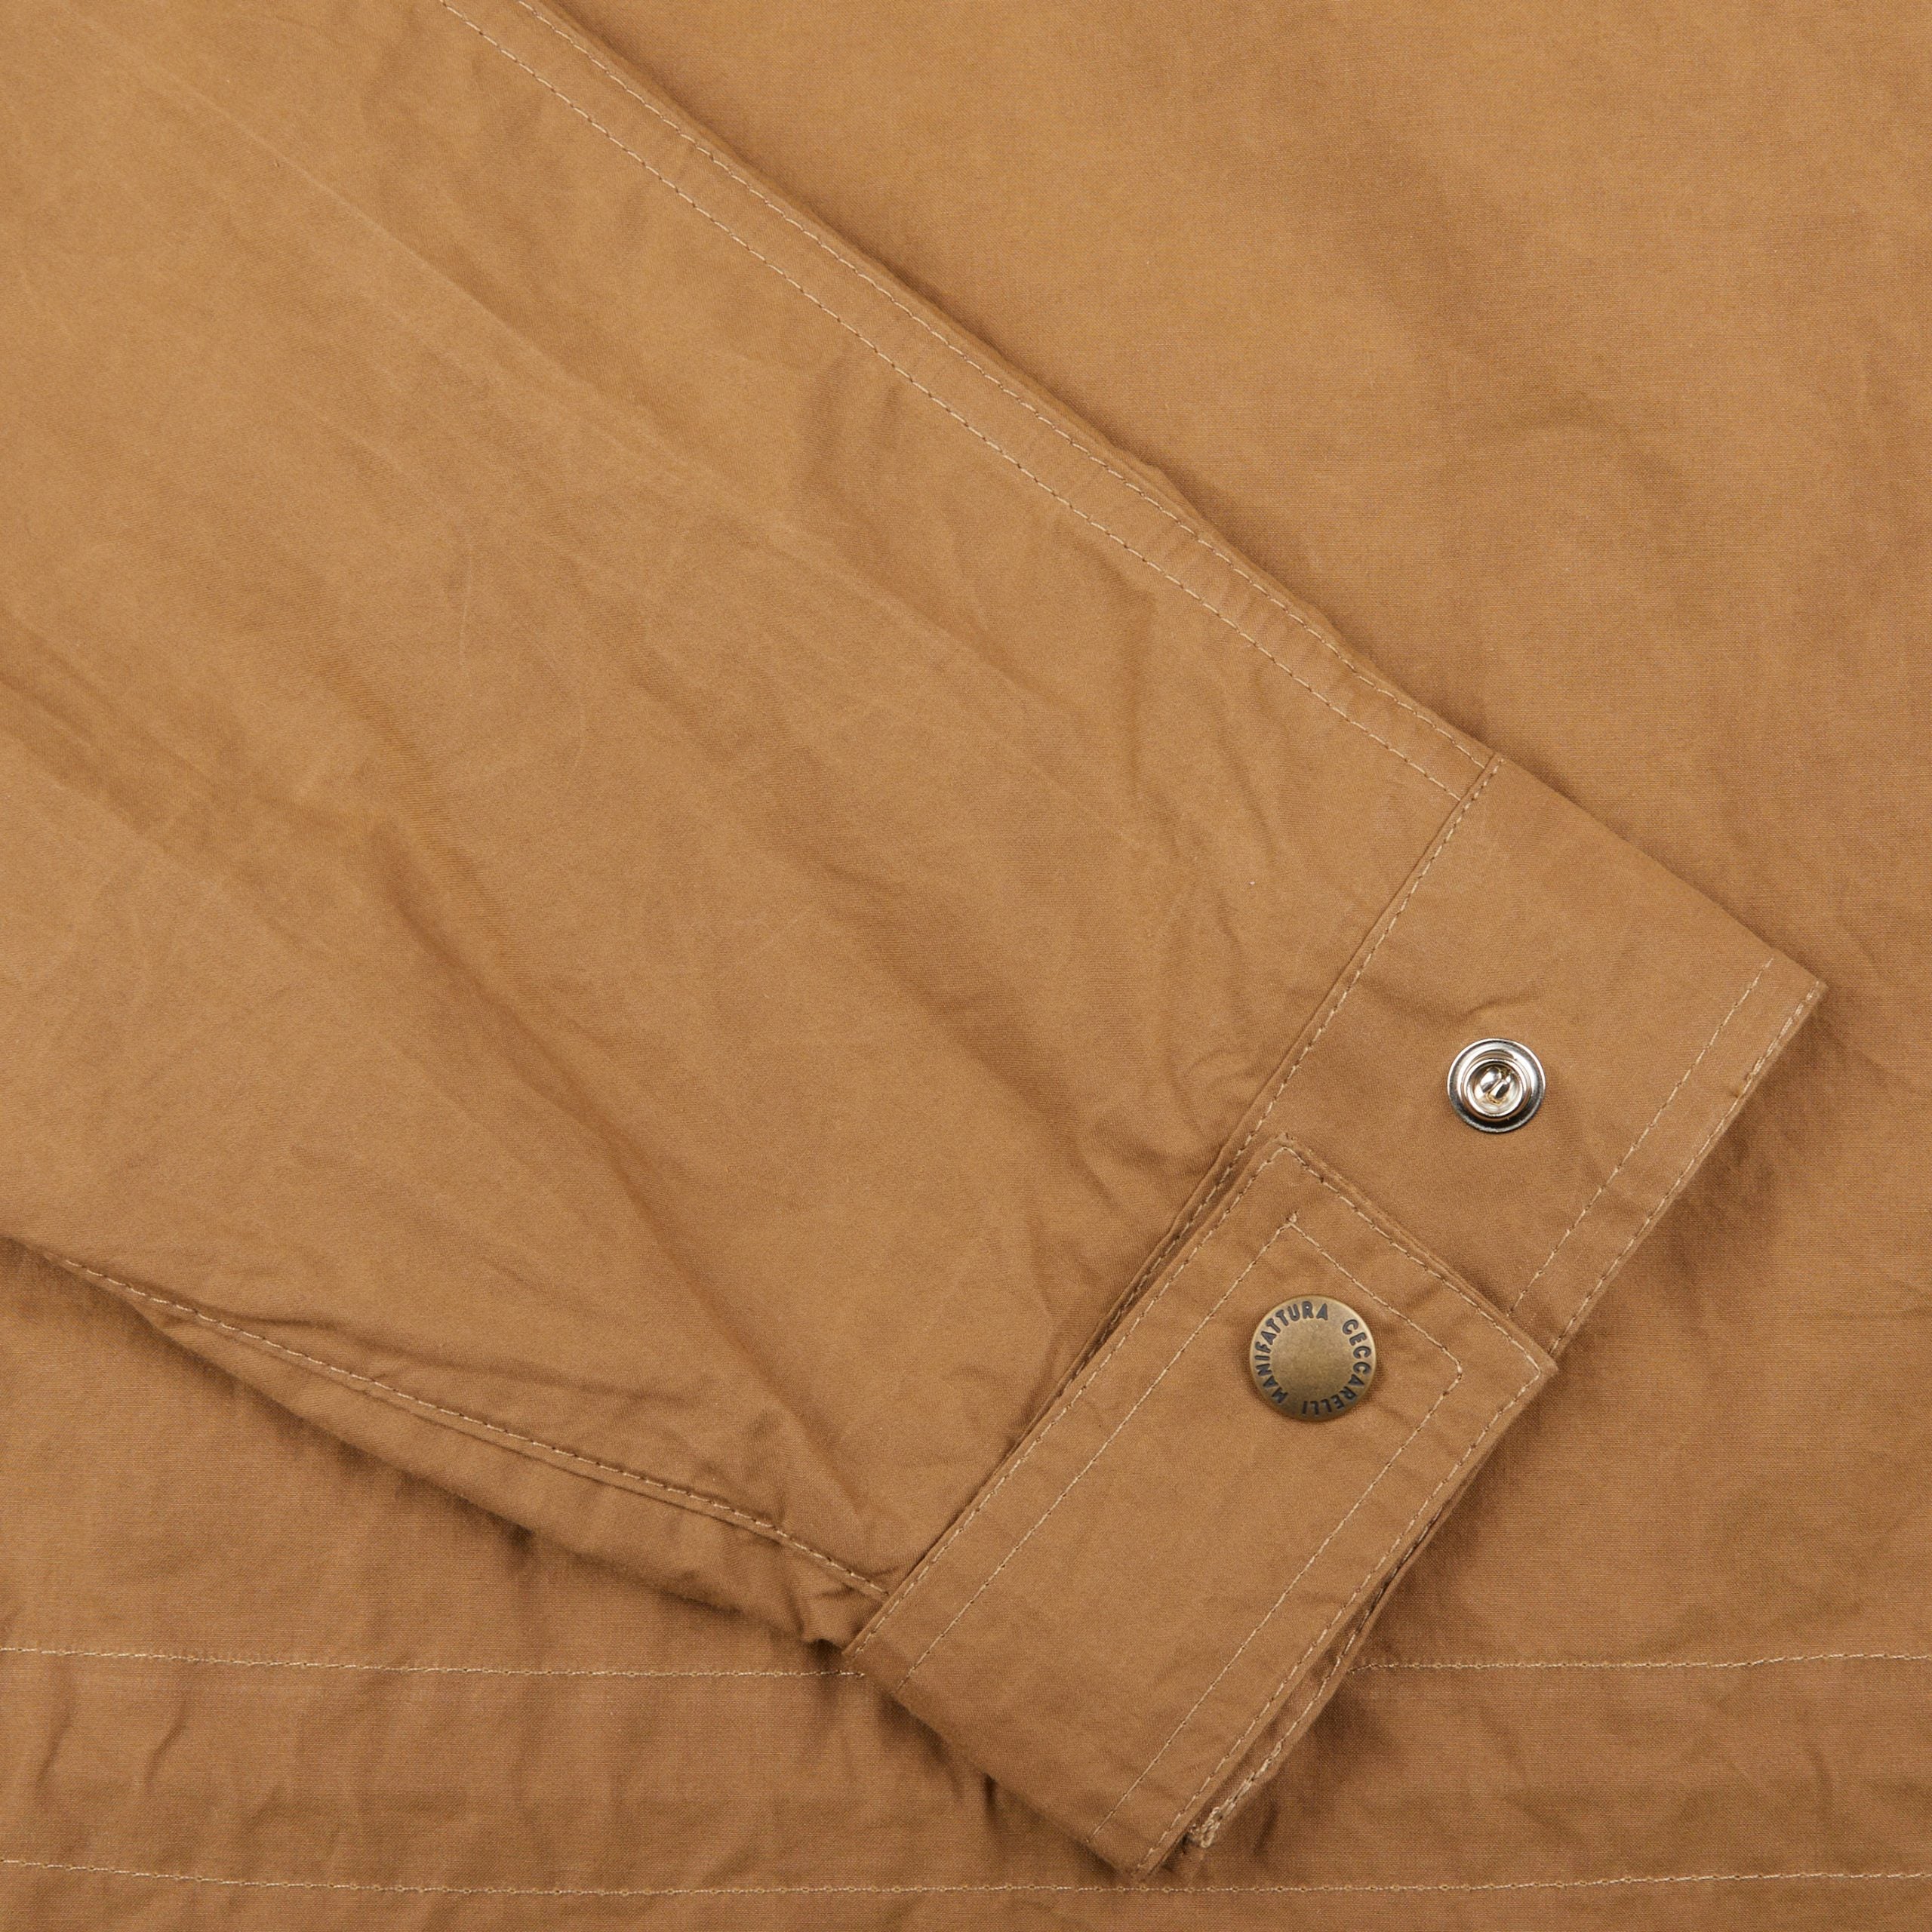 Manifattura Ceccarelli Dark Tan Cotton Canvas All Season Coat Cuff